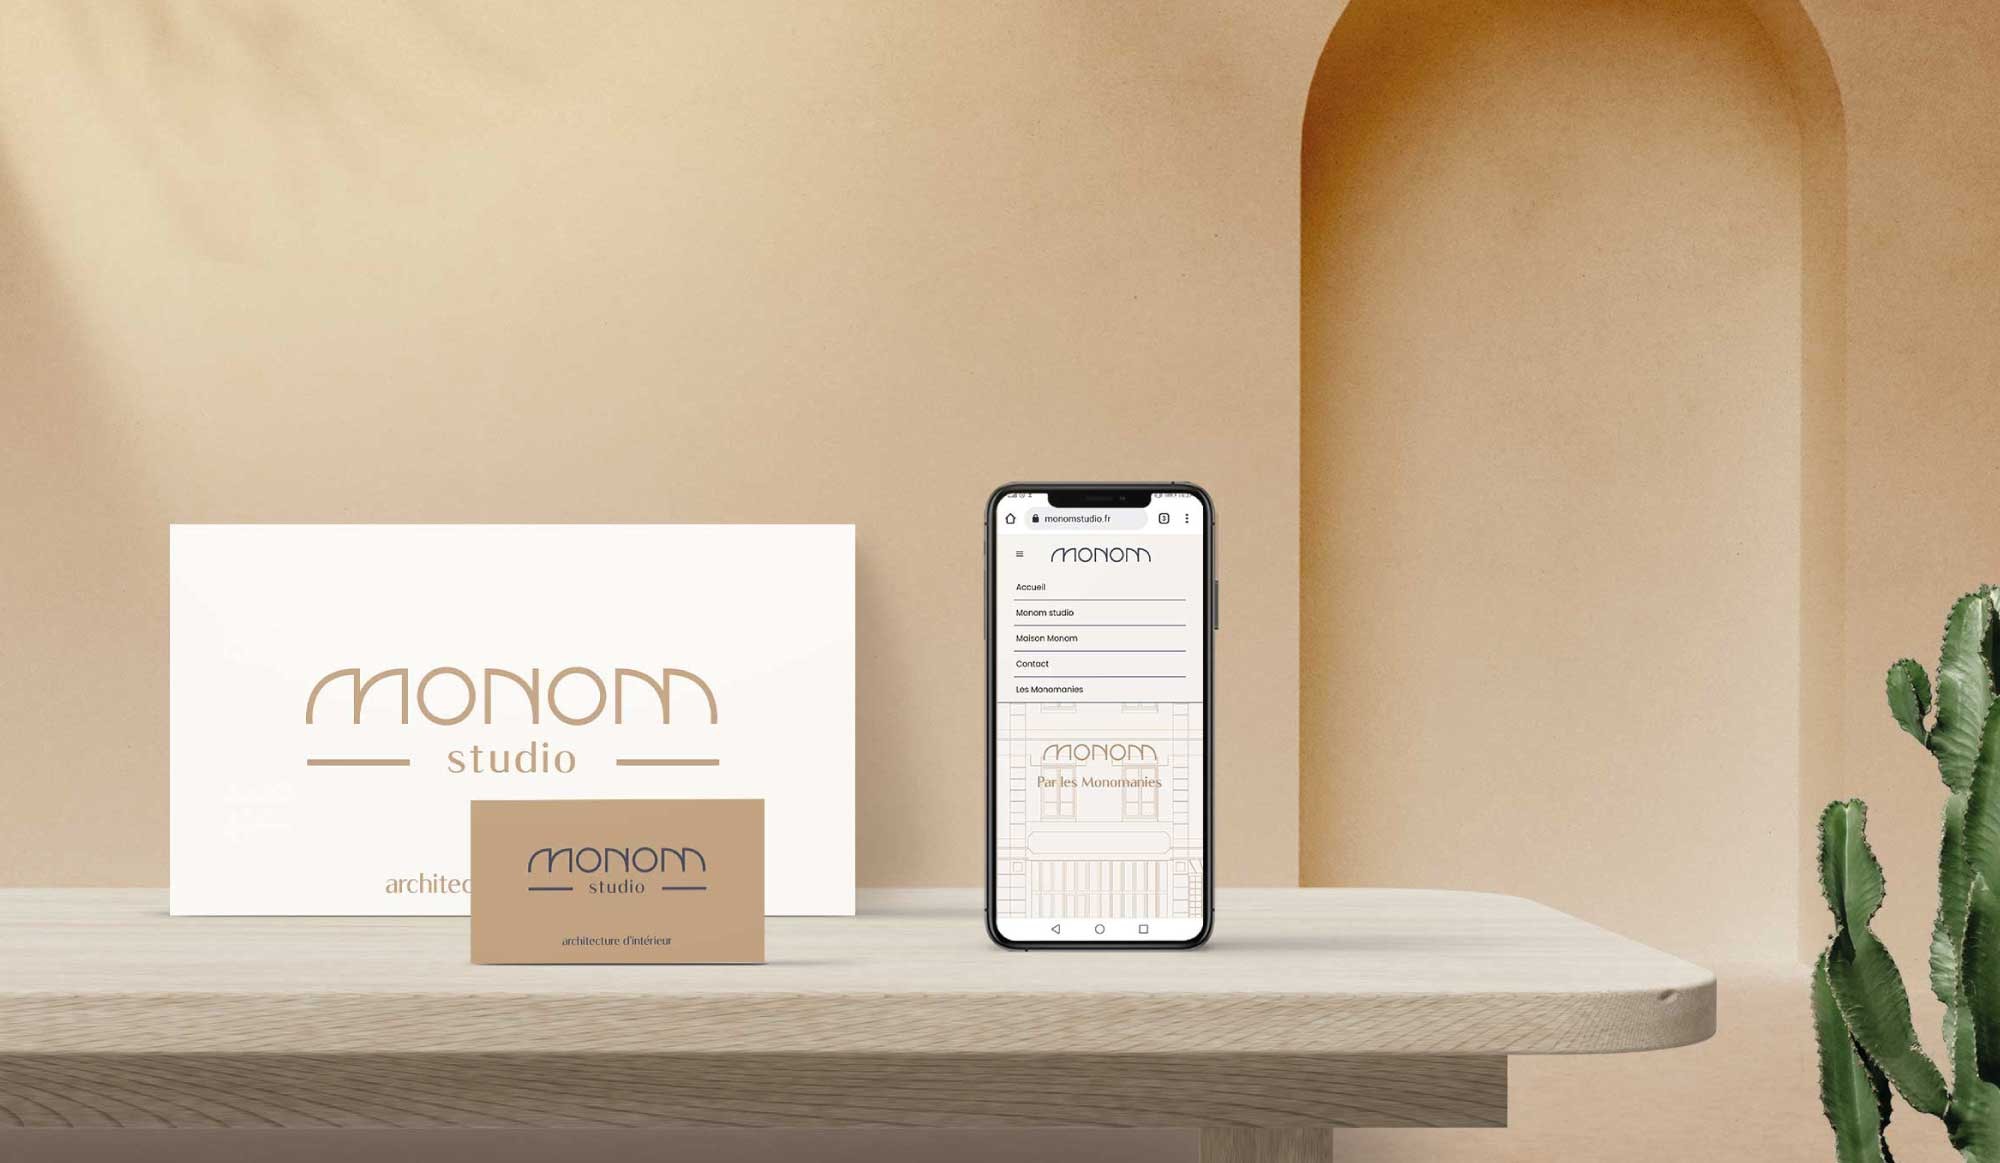 Mise en situation par mock-up du site internet et de l'identité visuelle de Monom sur supports imprimés et smartphone.